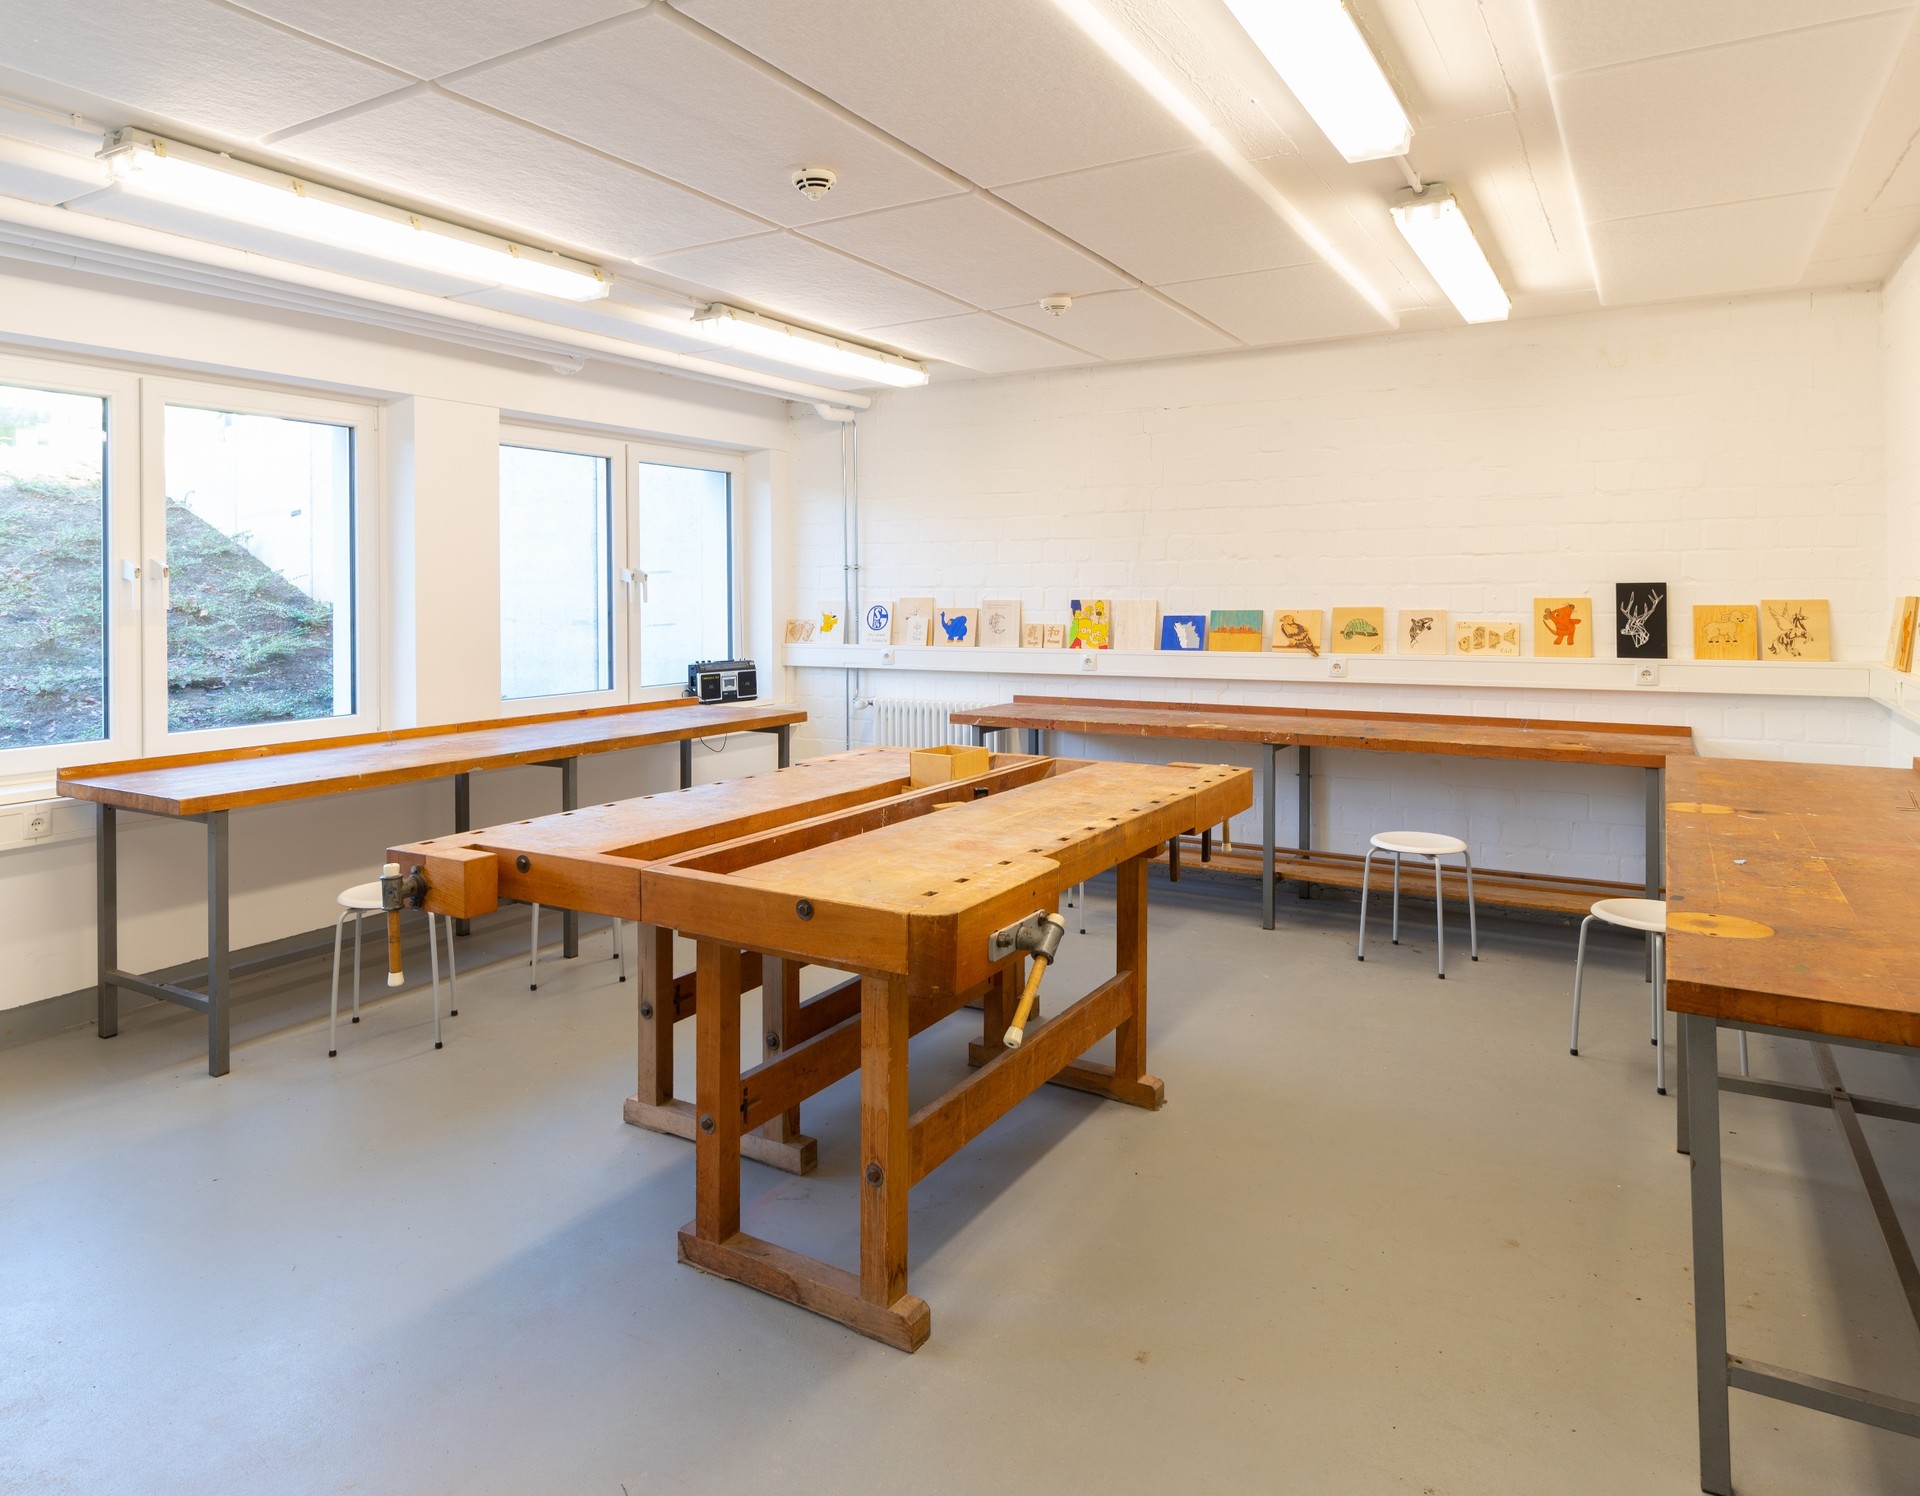 In dem Werkraum der Schule steht in der Mitte ein großer heller Holztisch. An den Wänden hängen hergestellte Bildwerke.